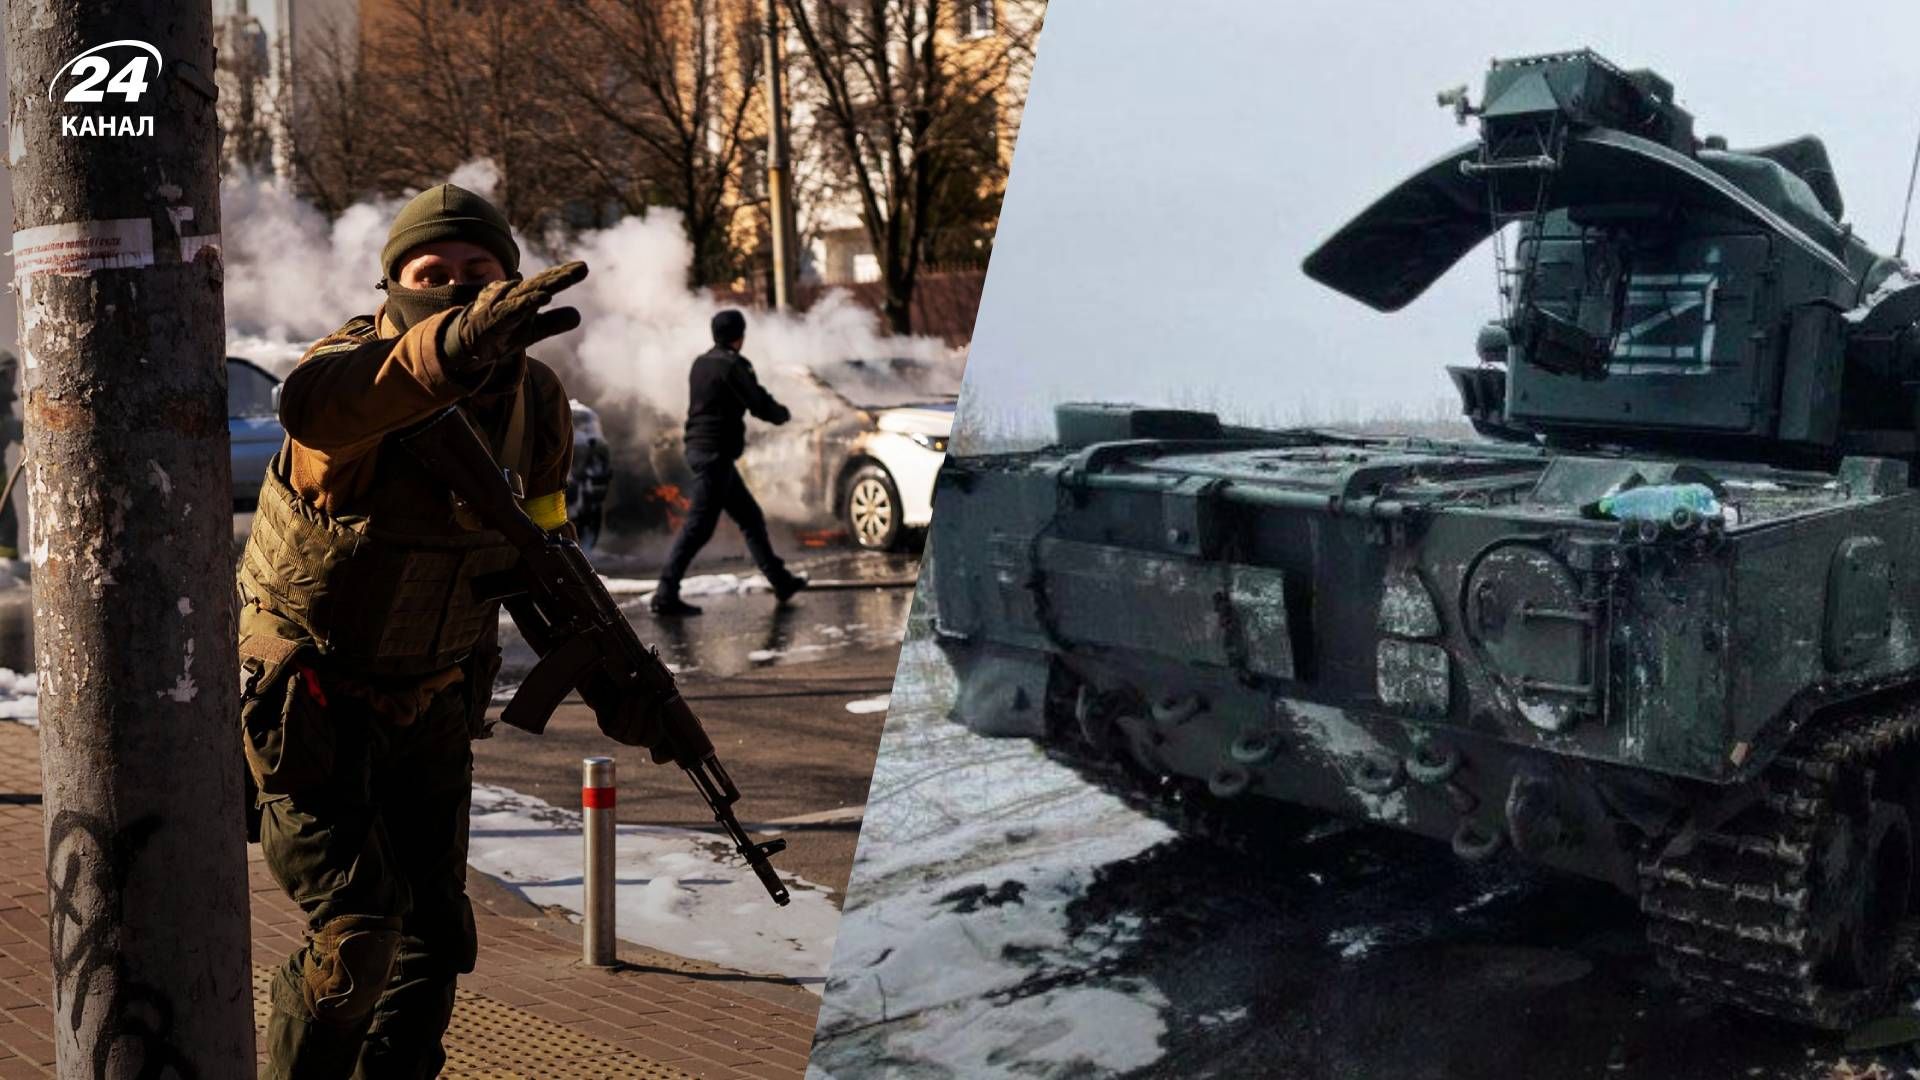 Найдовший місяць в житті: українці в мережі пригадують події лютого - 24 Канал